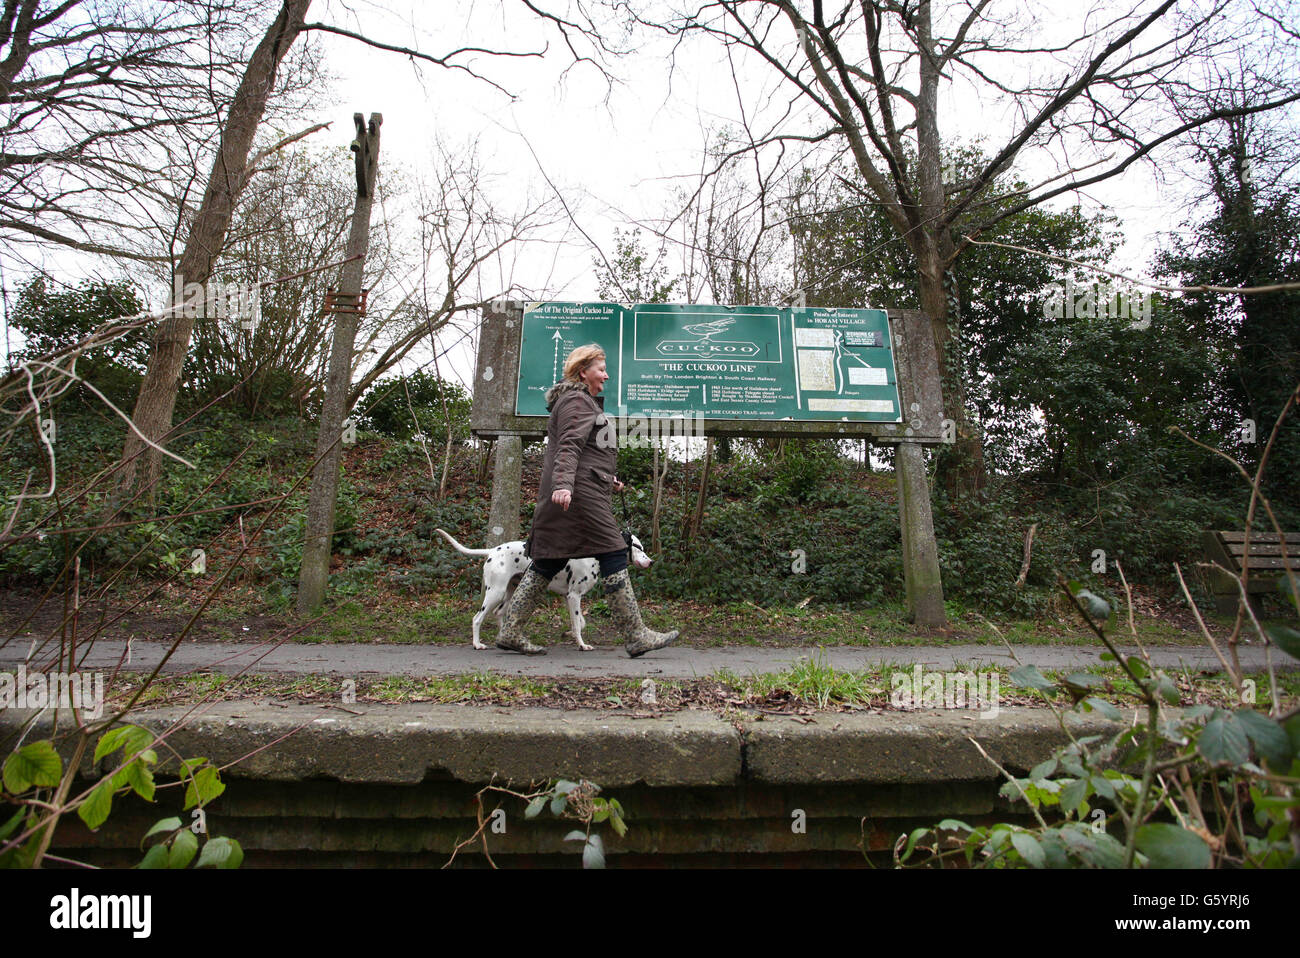 Eine Dame führt ihren Hund entlang der Überreste des Bahnsteigs am ehemaligen Bahnhof der Kuckucklinie in Horam, East Sussex. Da die Passagierzahlen in den 1960er Jahren zurückgingen, wurde die Strecke im Beeching-Plan gestoppt und die Strecke nördlich von Hailsham im Juni 1965 für Passagiere gesperrt. Die ehemalige Strecke ist heute als Cuckoo Trail bekannt, ein 14-Meilen-Weg und Radweg, der weitgehend der ursprünglichen Eisenbahnlinie folgt. Stockfoto